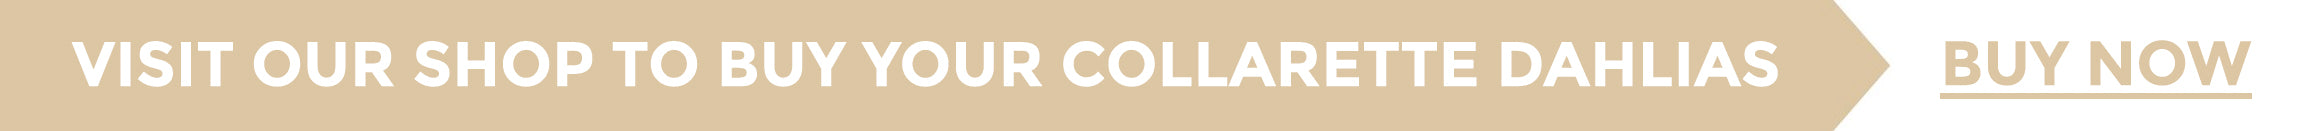 Buy Collarette dahlias online